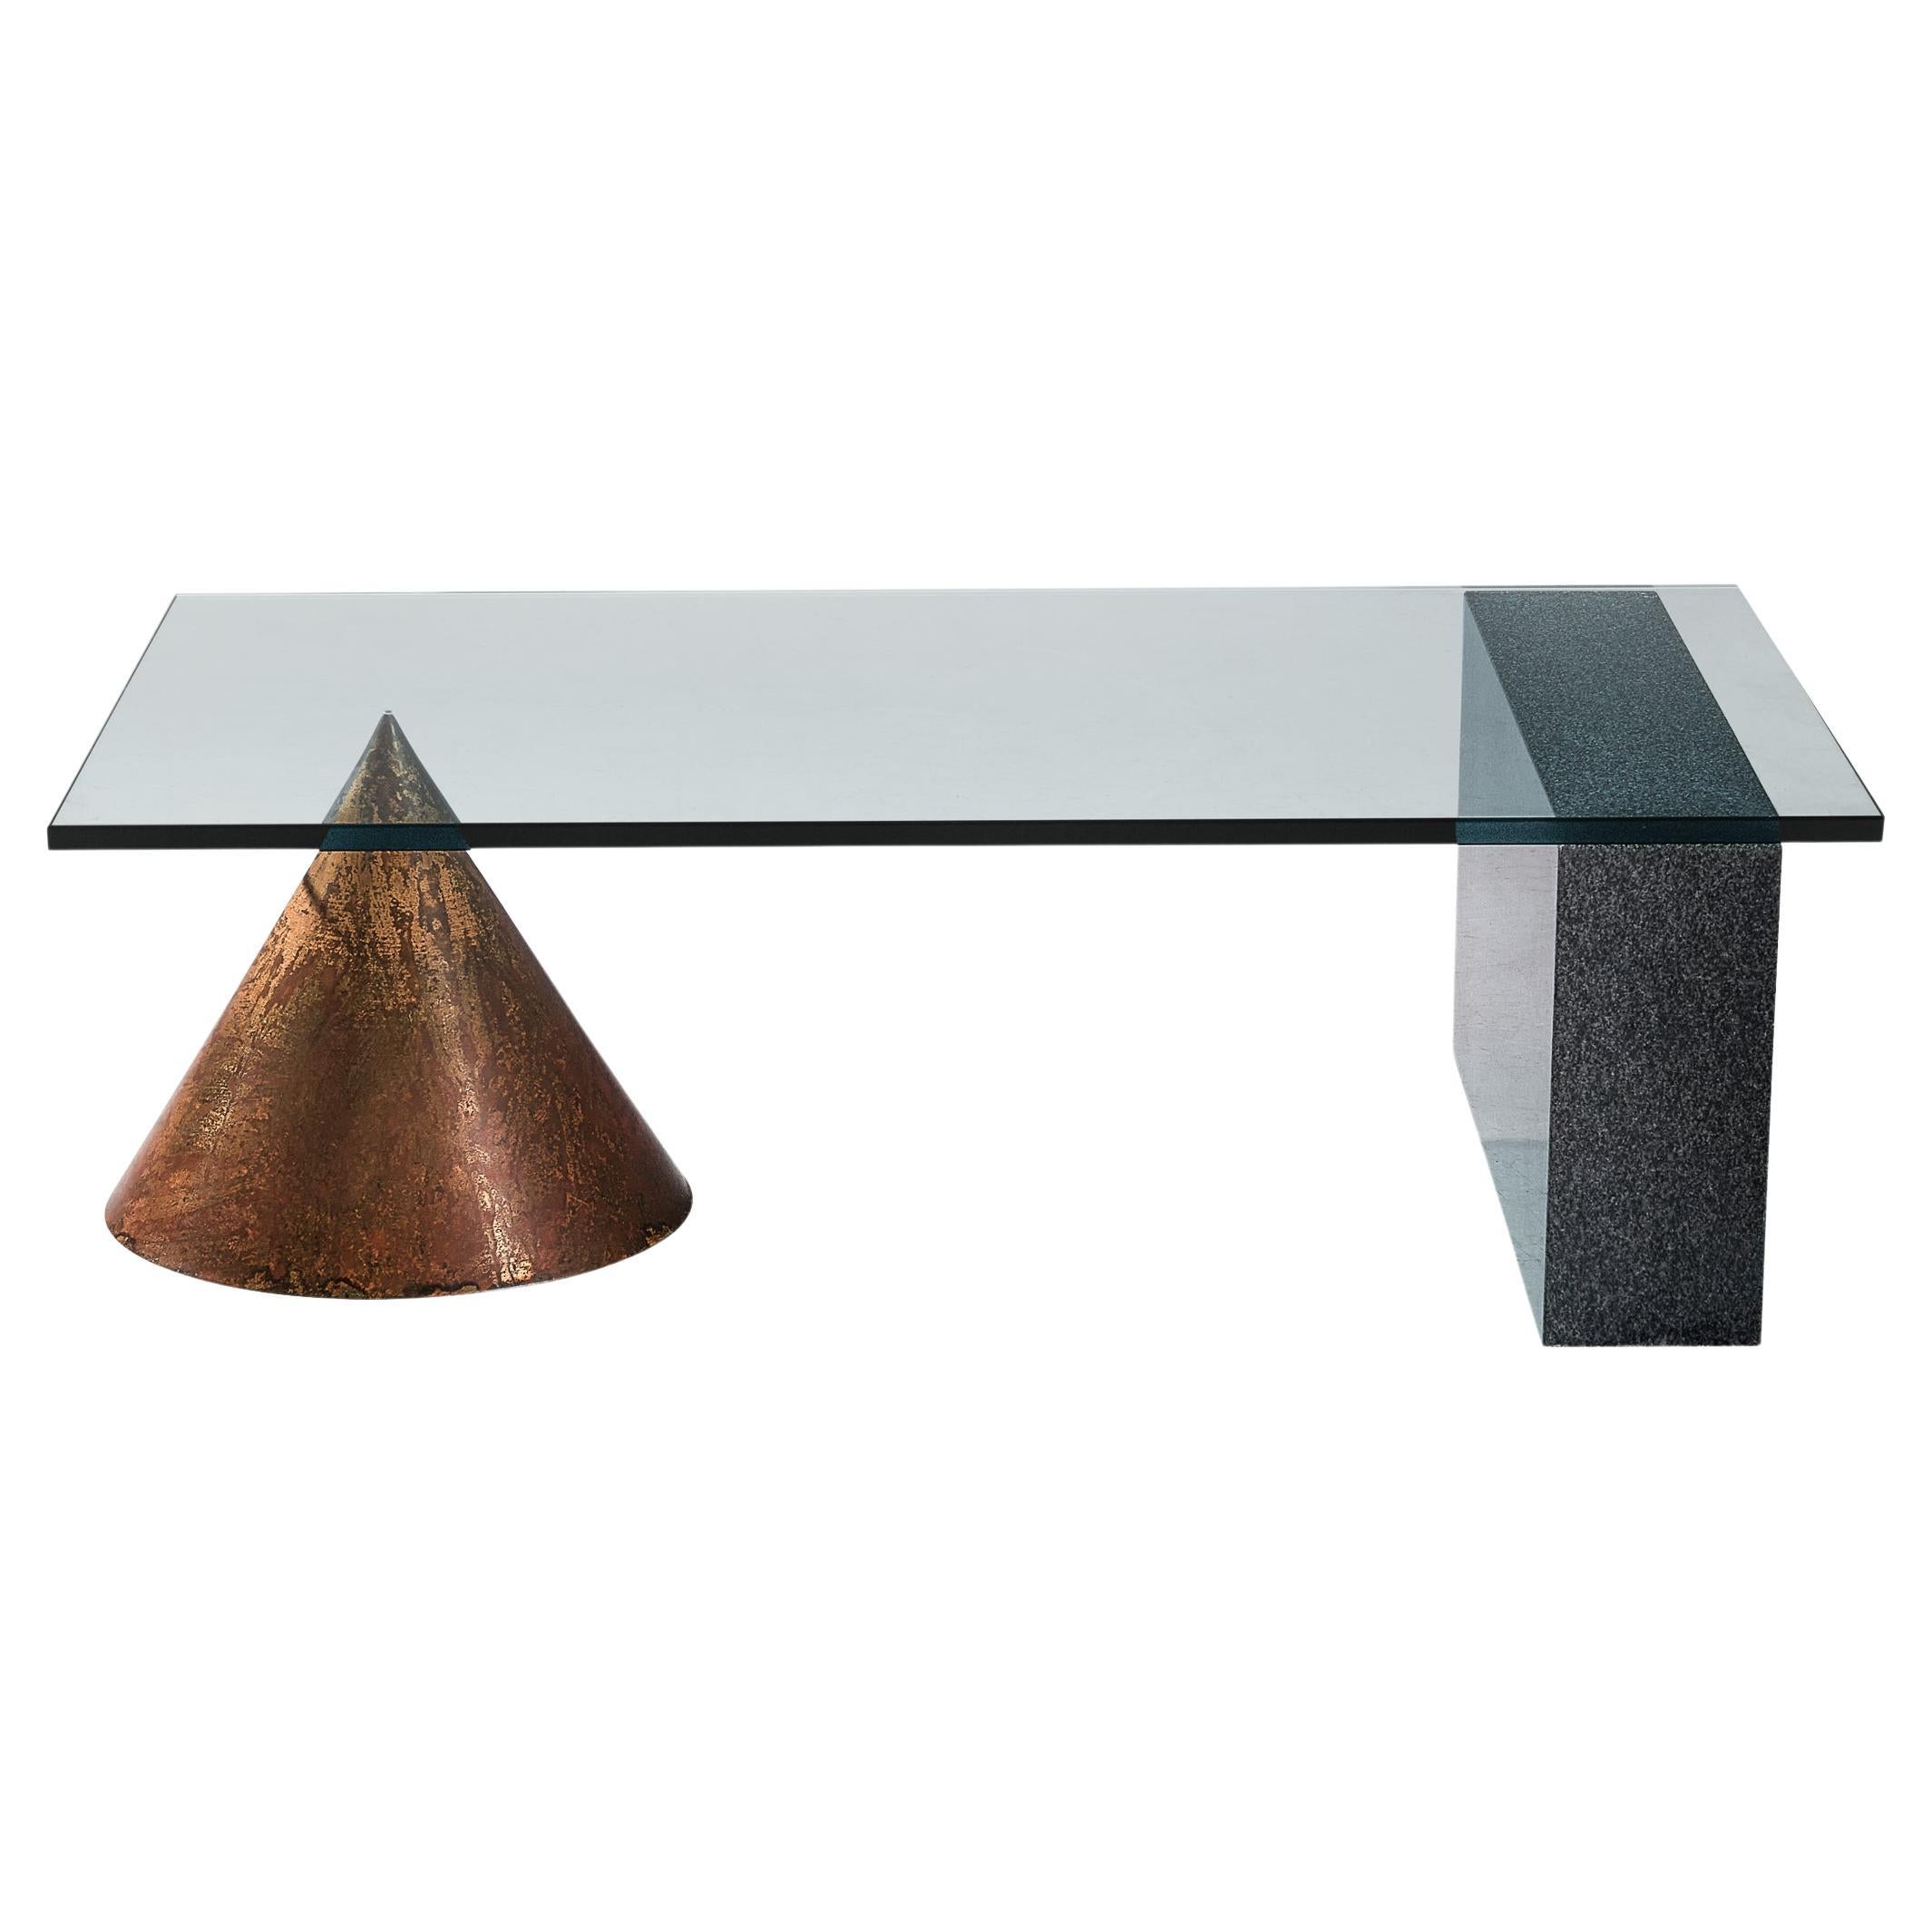 Massimo and Lella Vignelli Coffee Table in Copper, Granite and Glass